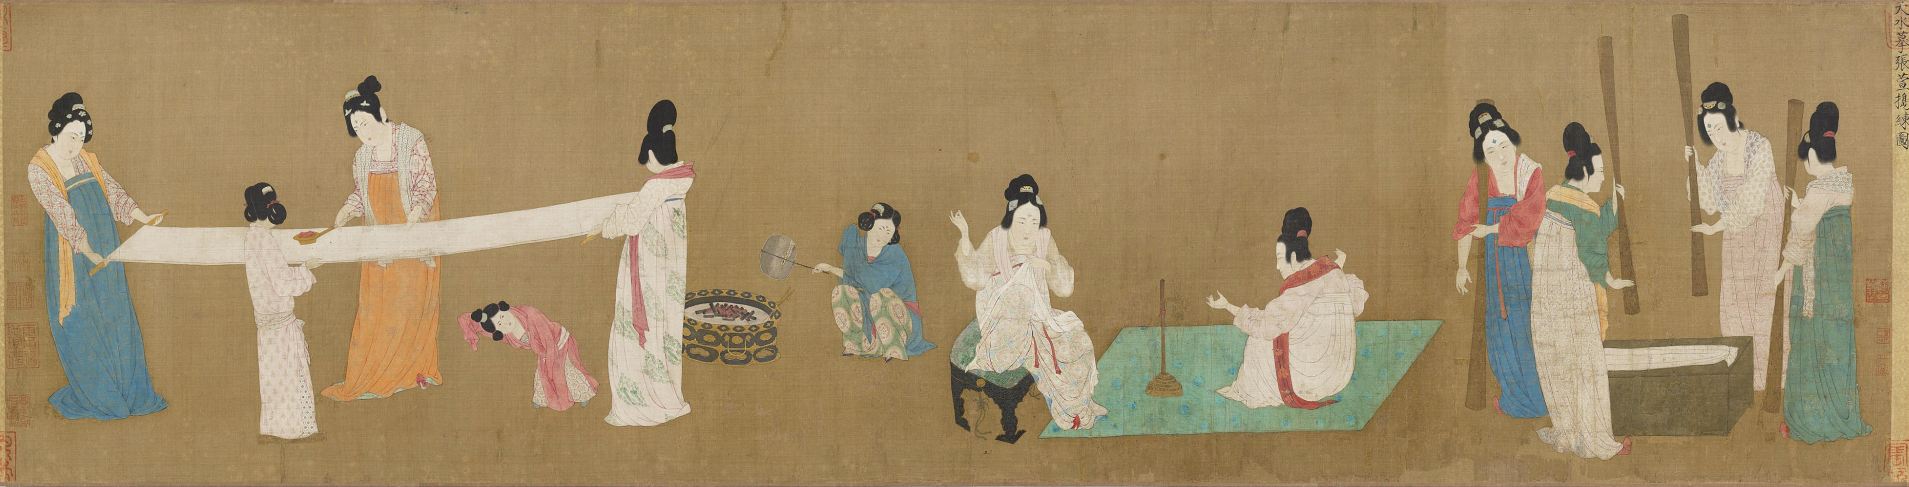 《捣练图》是中国古代仕女画的重要代表作.是唐代画家张萱的作品.